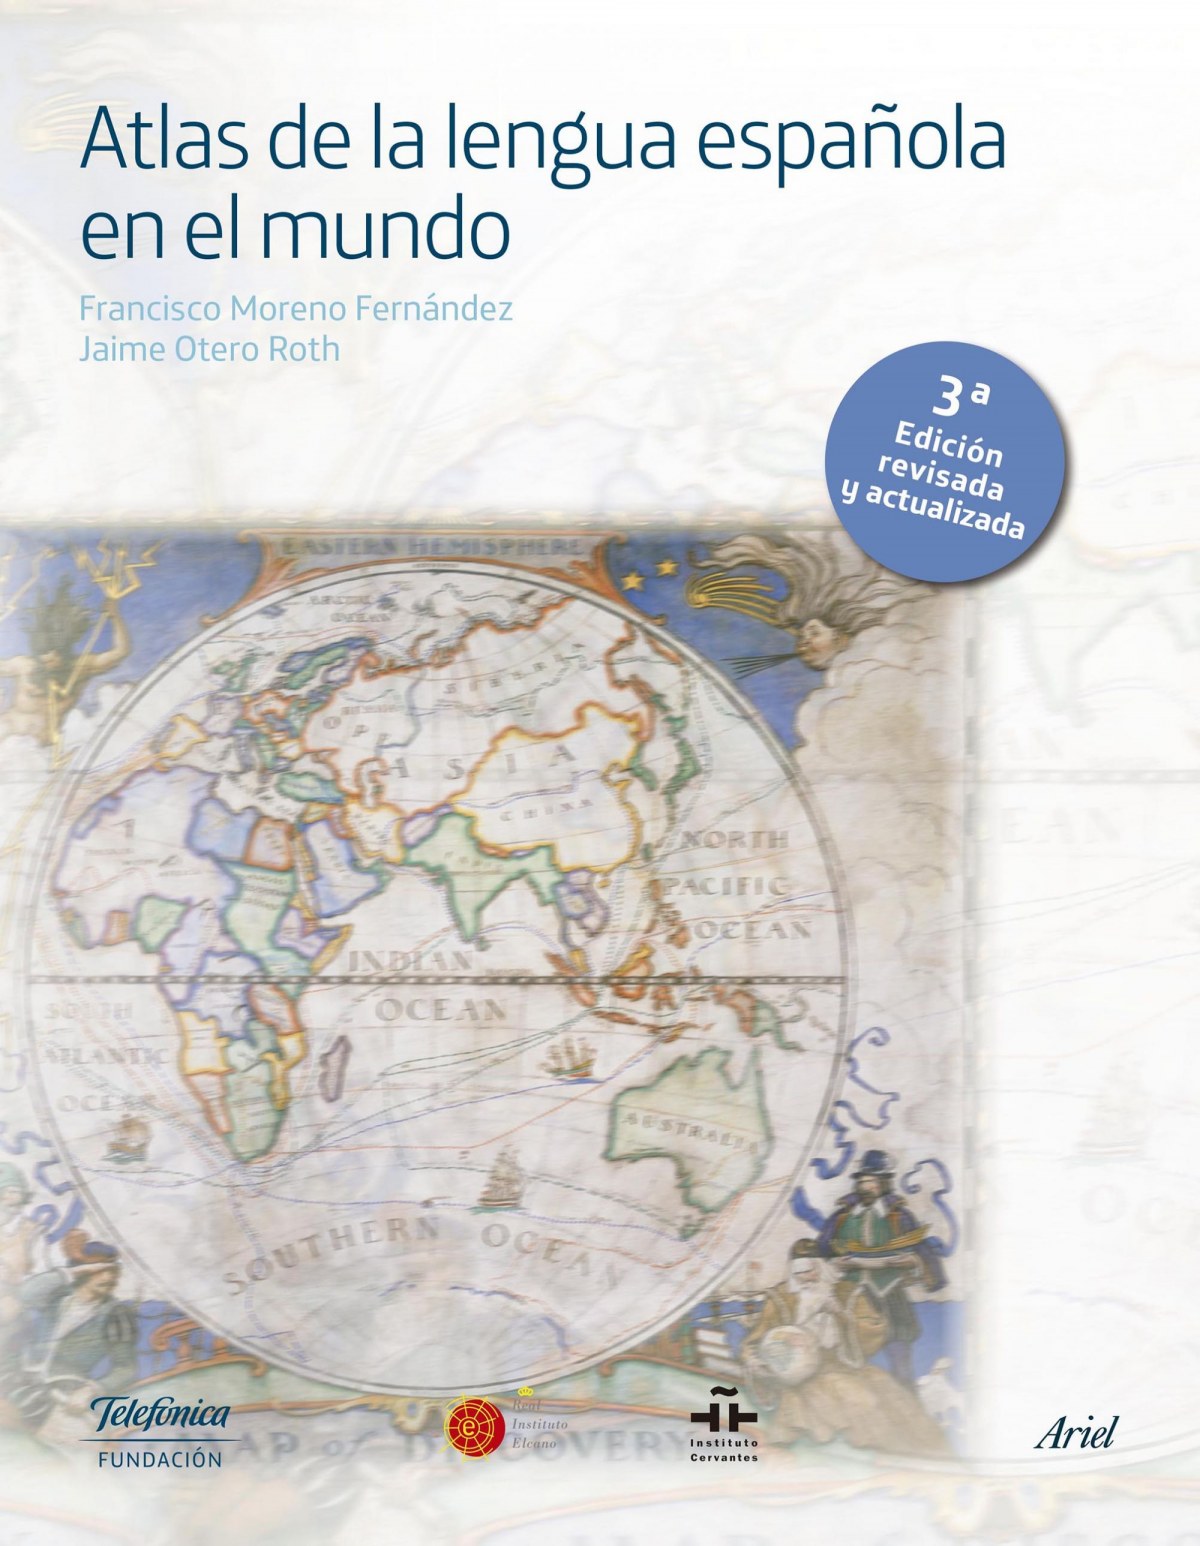 Atlas de la lengua espaÑola en el mundo - Fundacion Telefonica